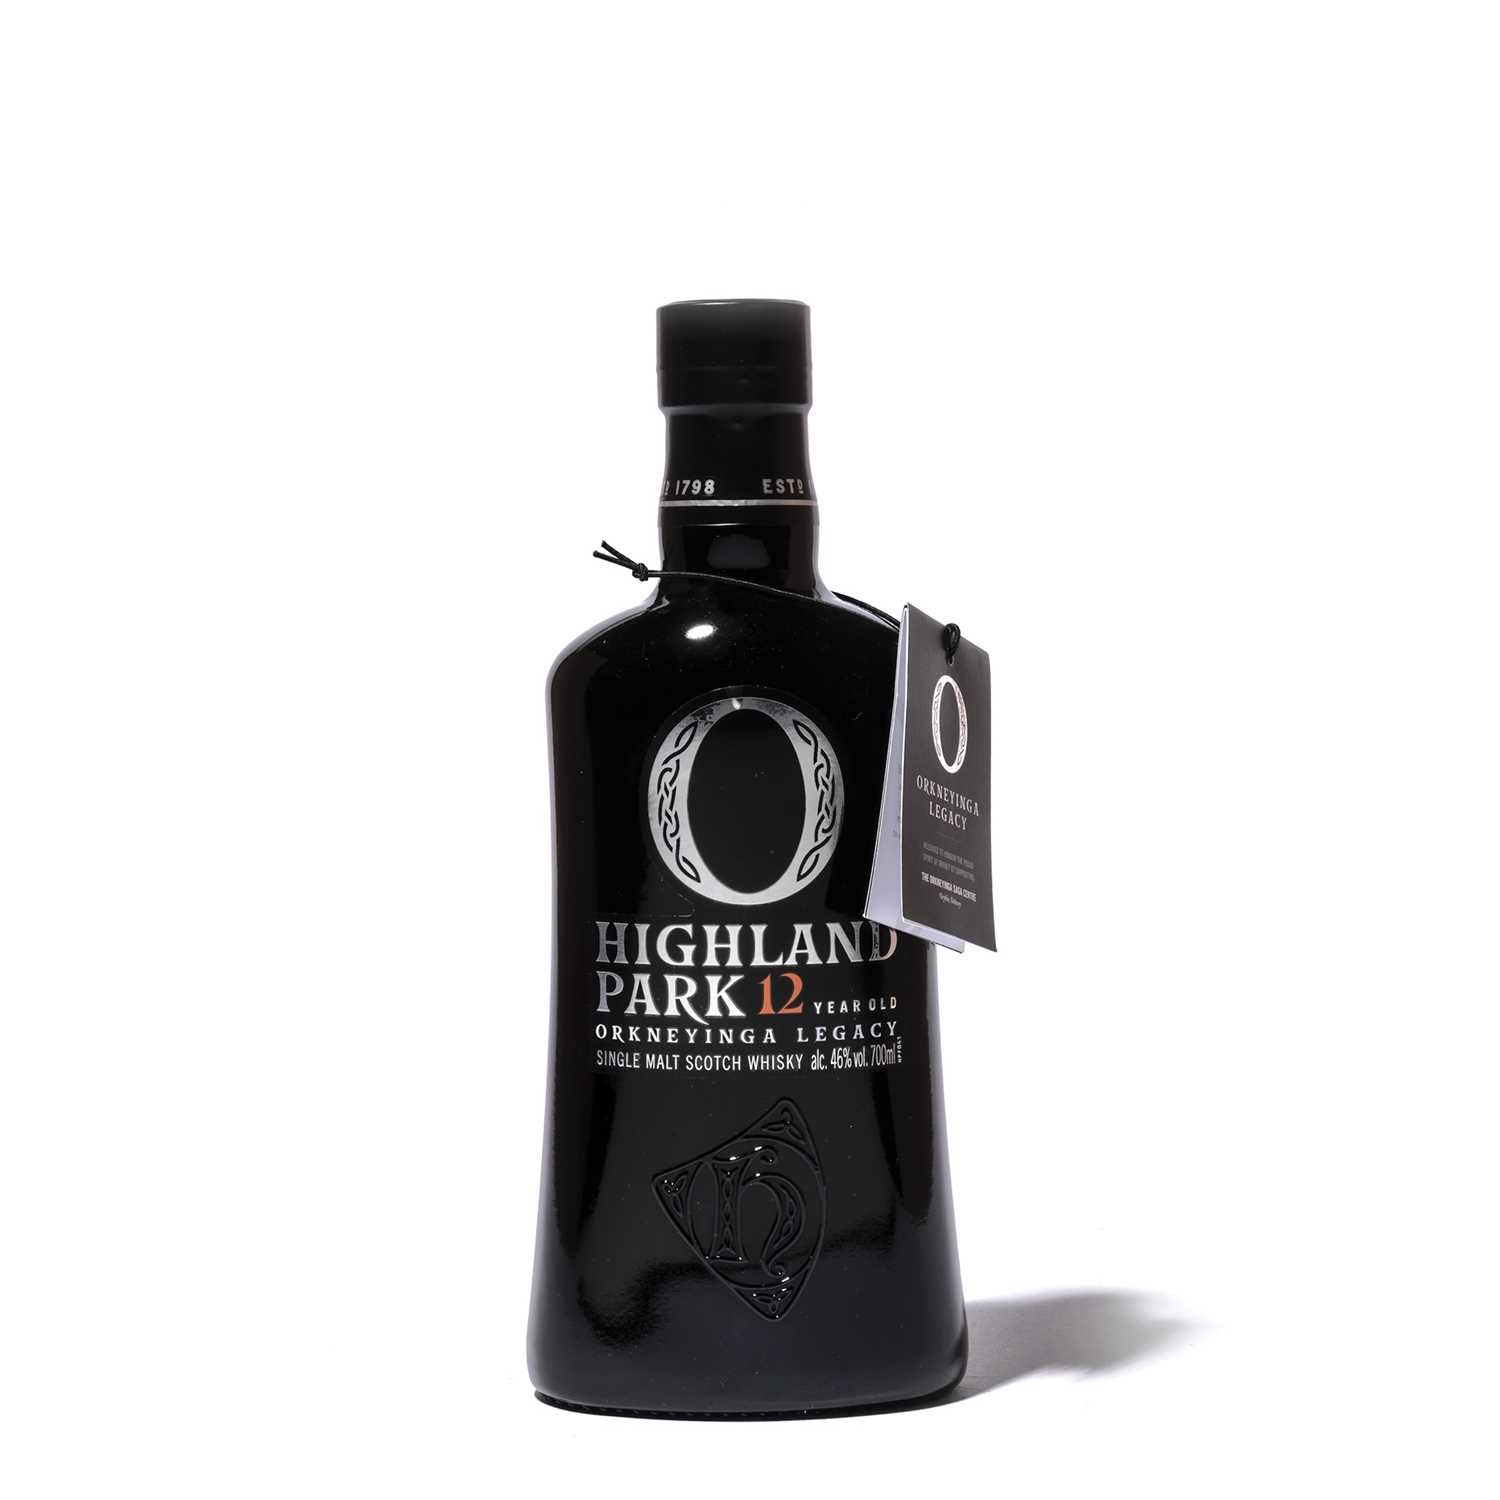 Lot 168 - 1 bottle Highland Park Orkneyinga Legacy 12 Year Old